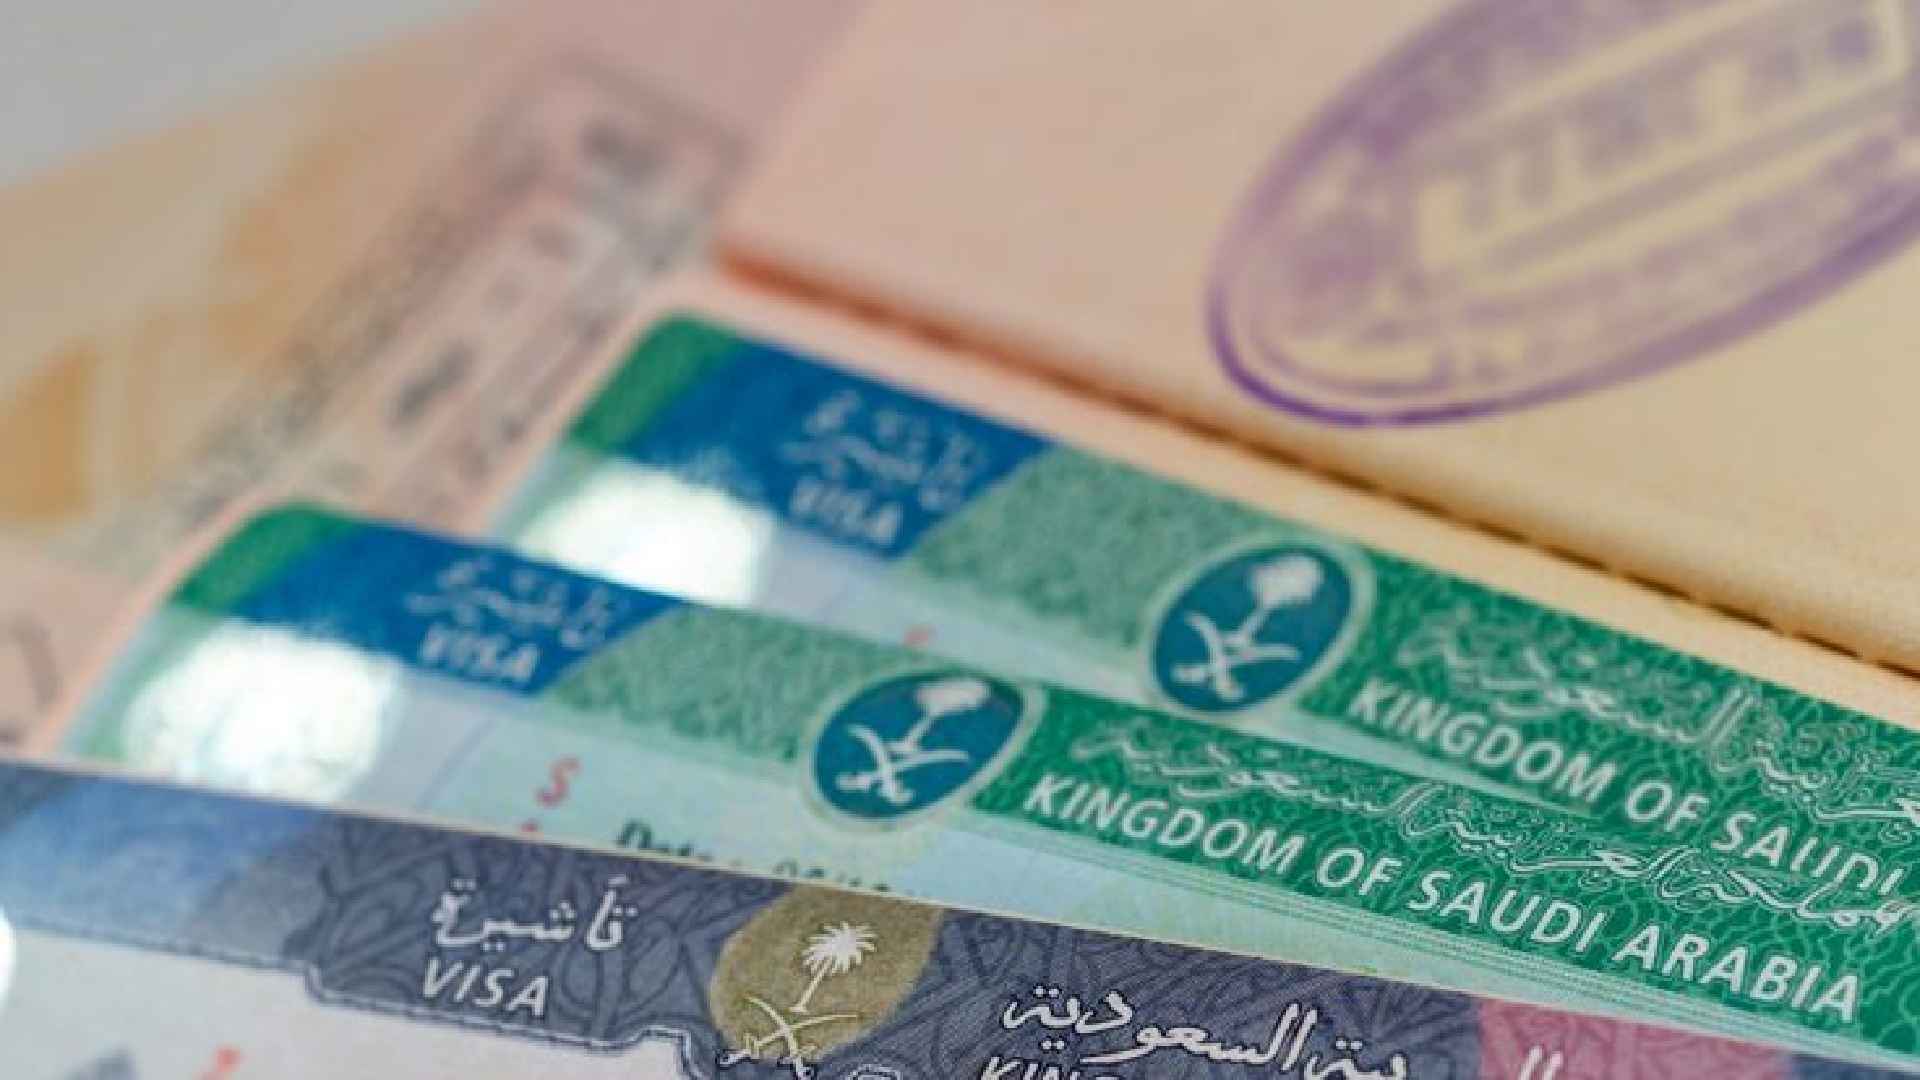 mofa visa check 